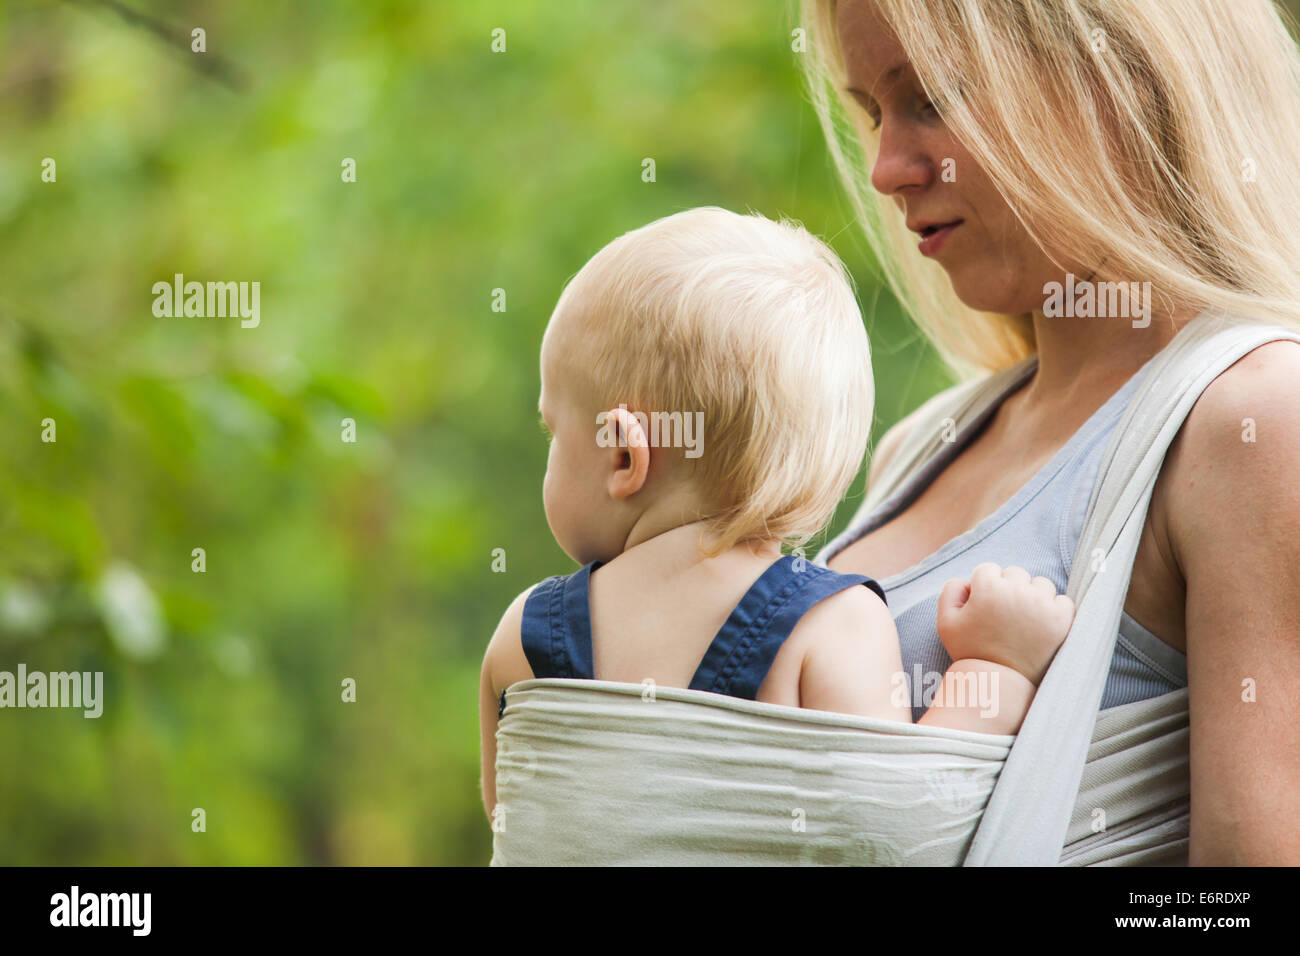 La mère est l'accomplissement de son enfant et la marche à pied. Bébé dans une écharpe. Banque D'Images